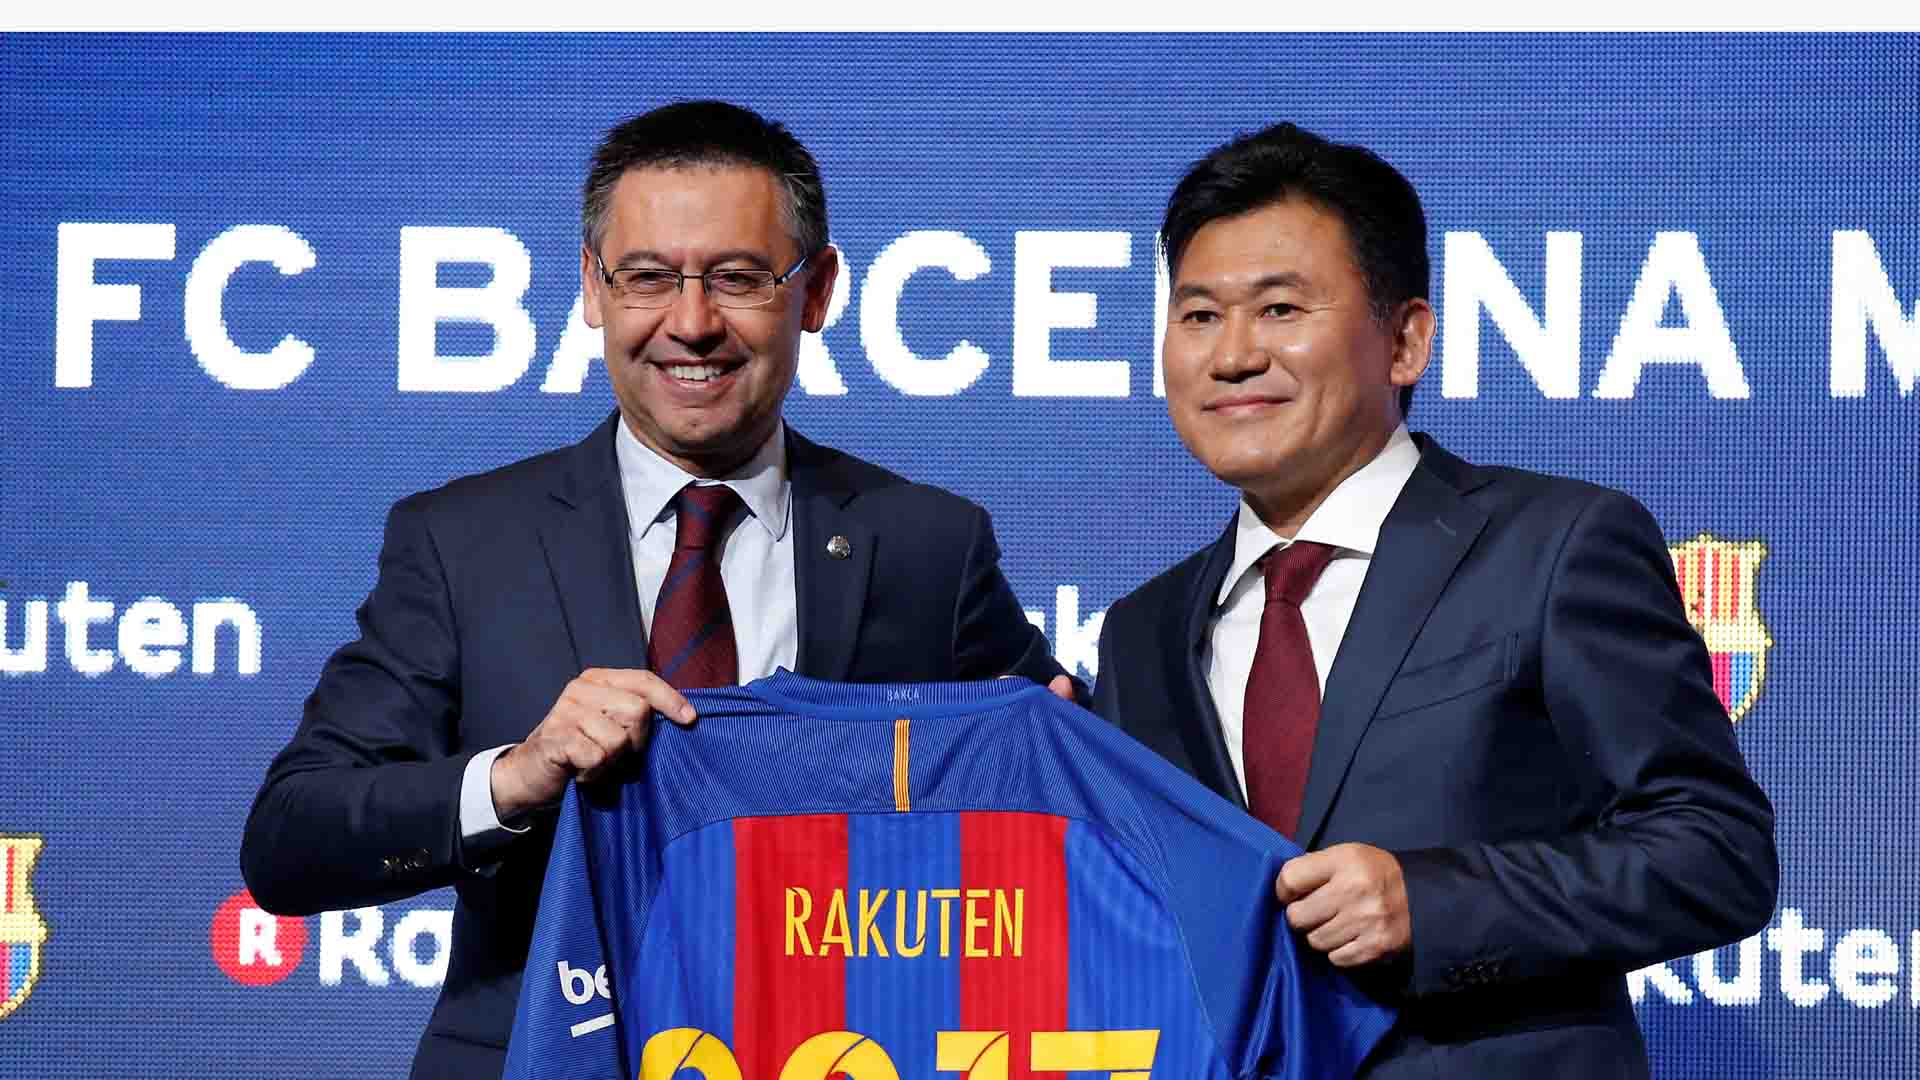 La empresa nipona Rakuten patrocinará al equipo catalán en las próximas cuatro temporadas por 60 millones de euros anuales